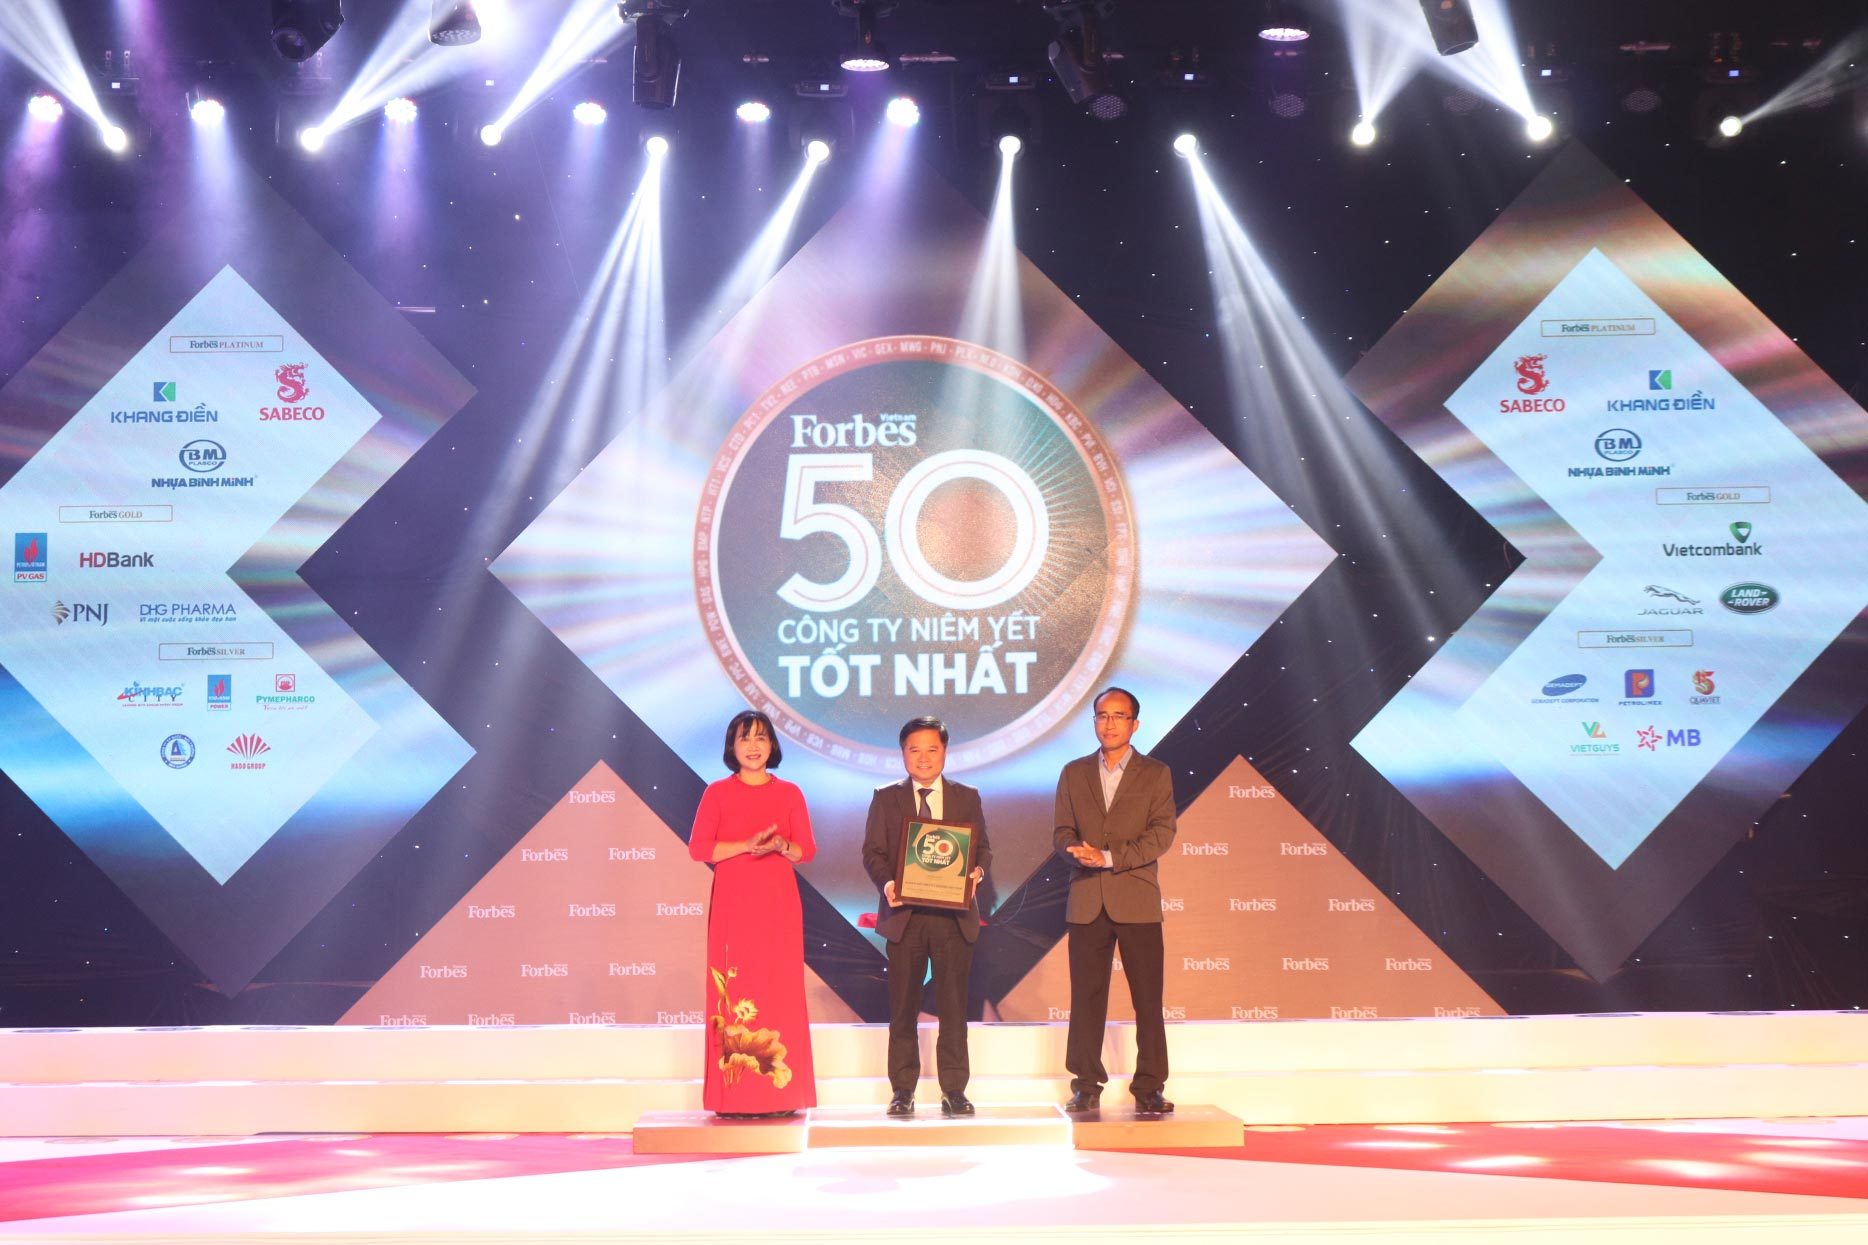 Techcombank vào top 50 công ty niêm yết tốt nhất Việt Nam 2020 của Forbes